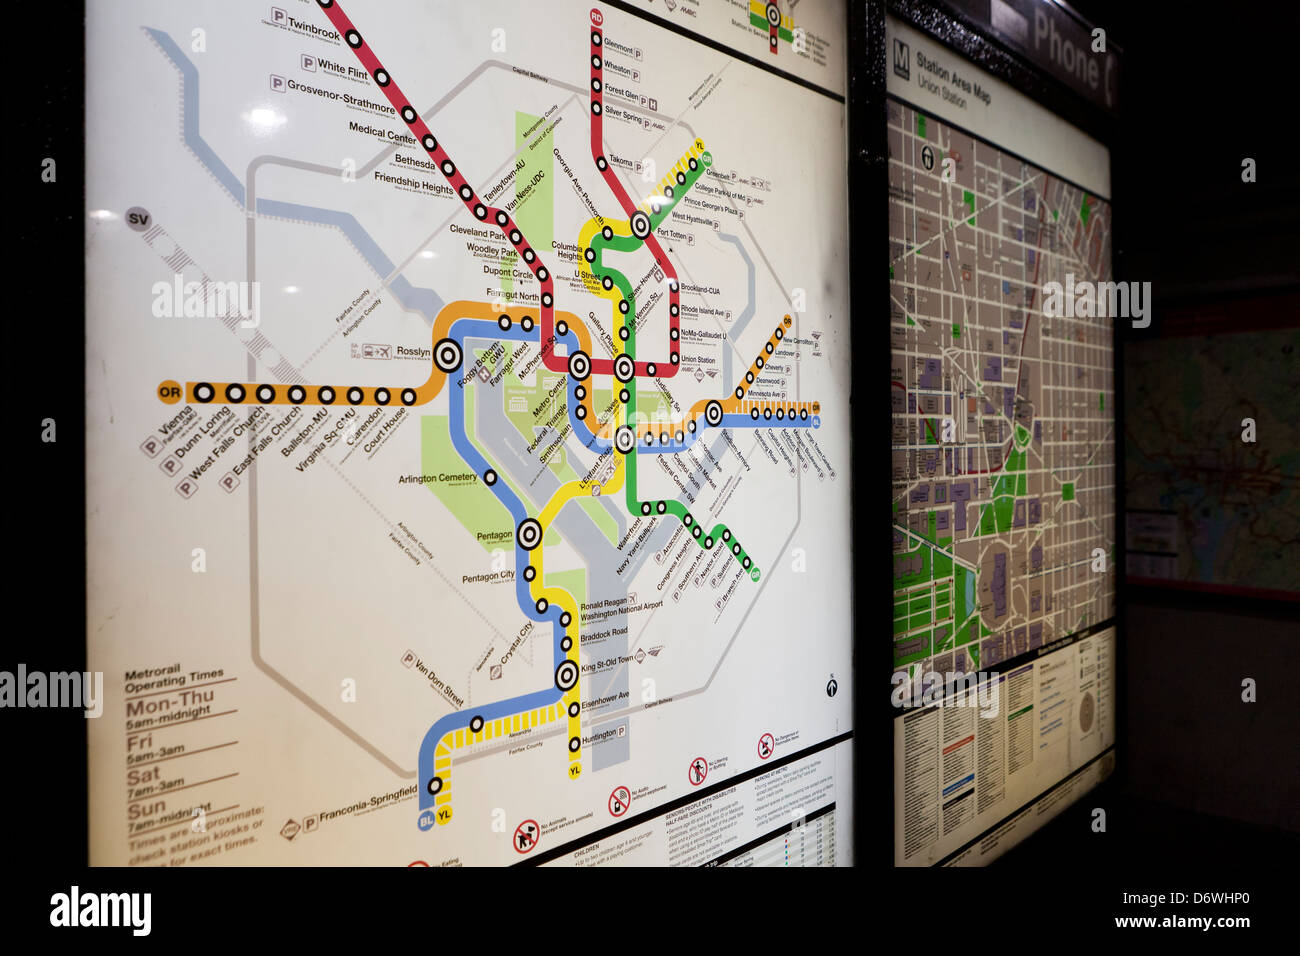 Washington DC metro map Stock Photo